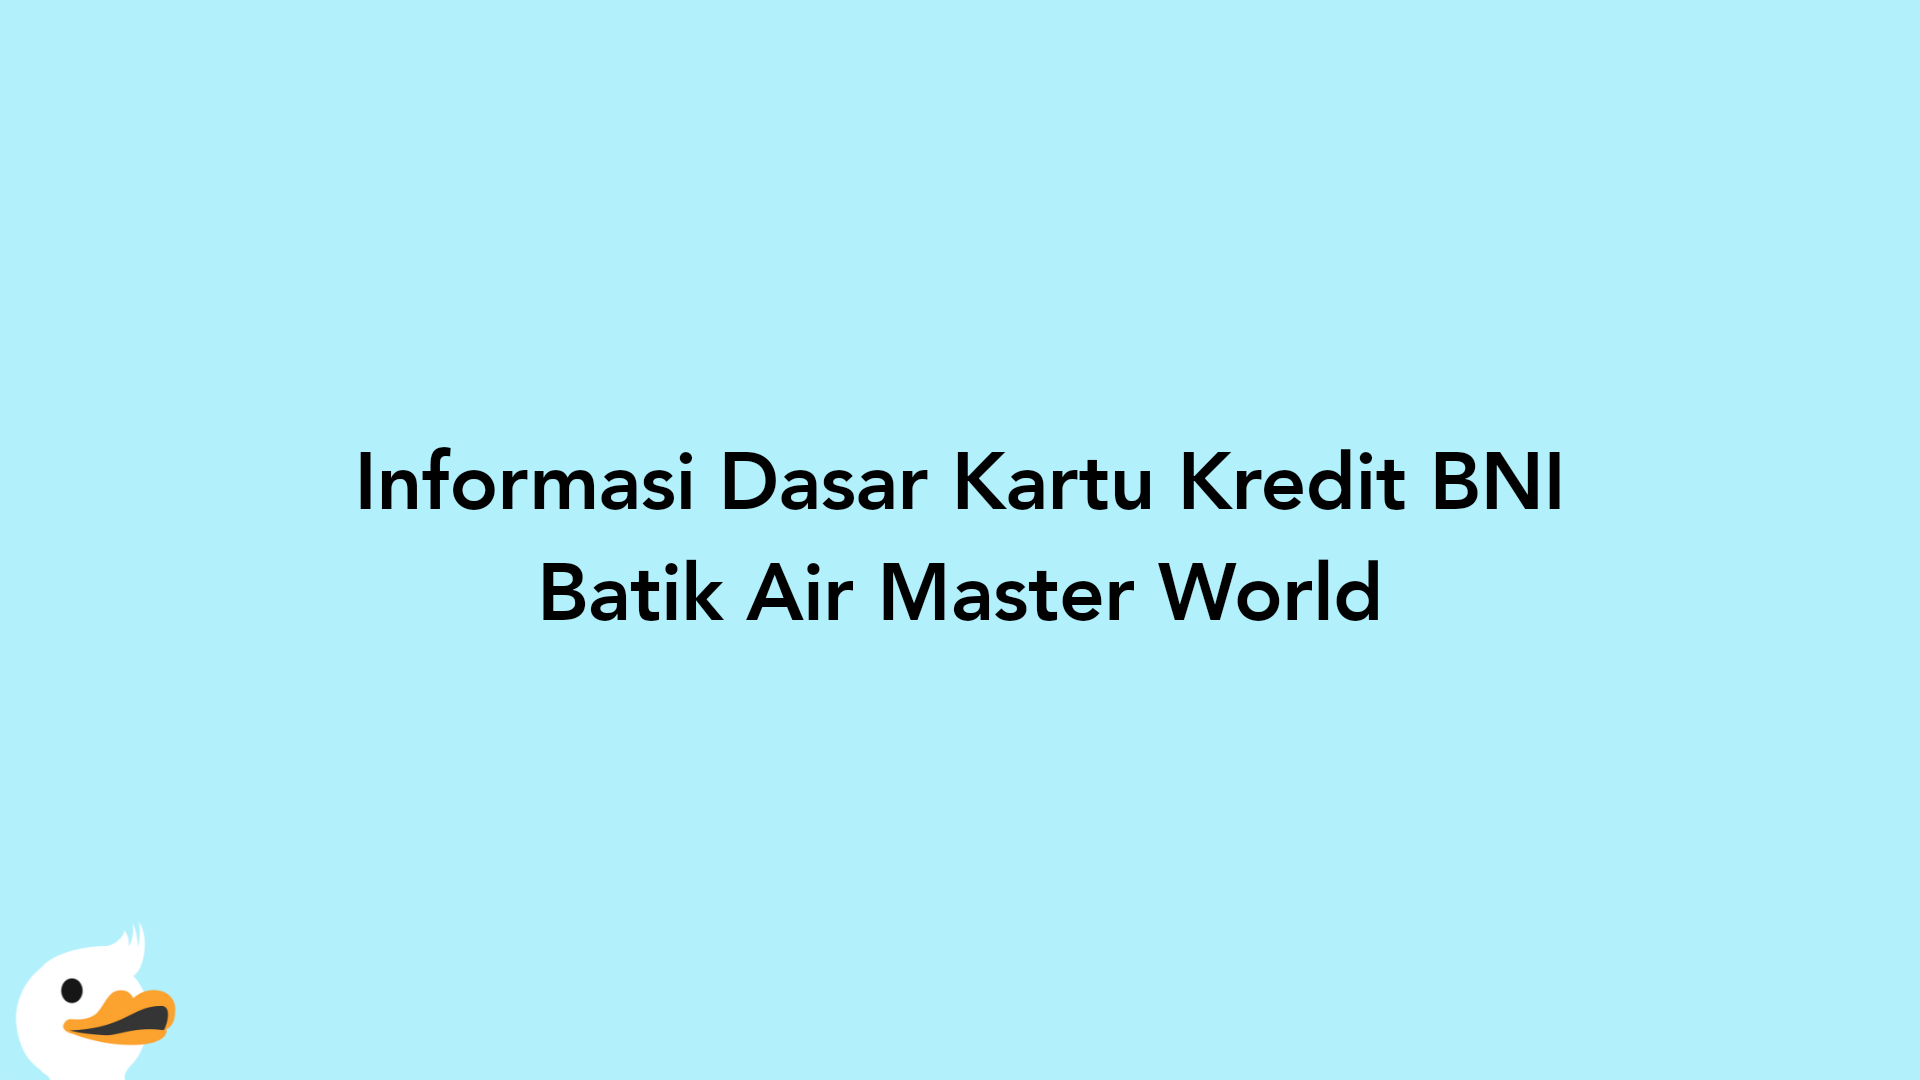 Informasi Dasar Kartu Kredit BNI Batik Air Master World